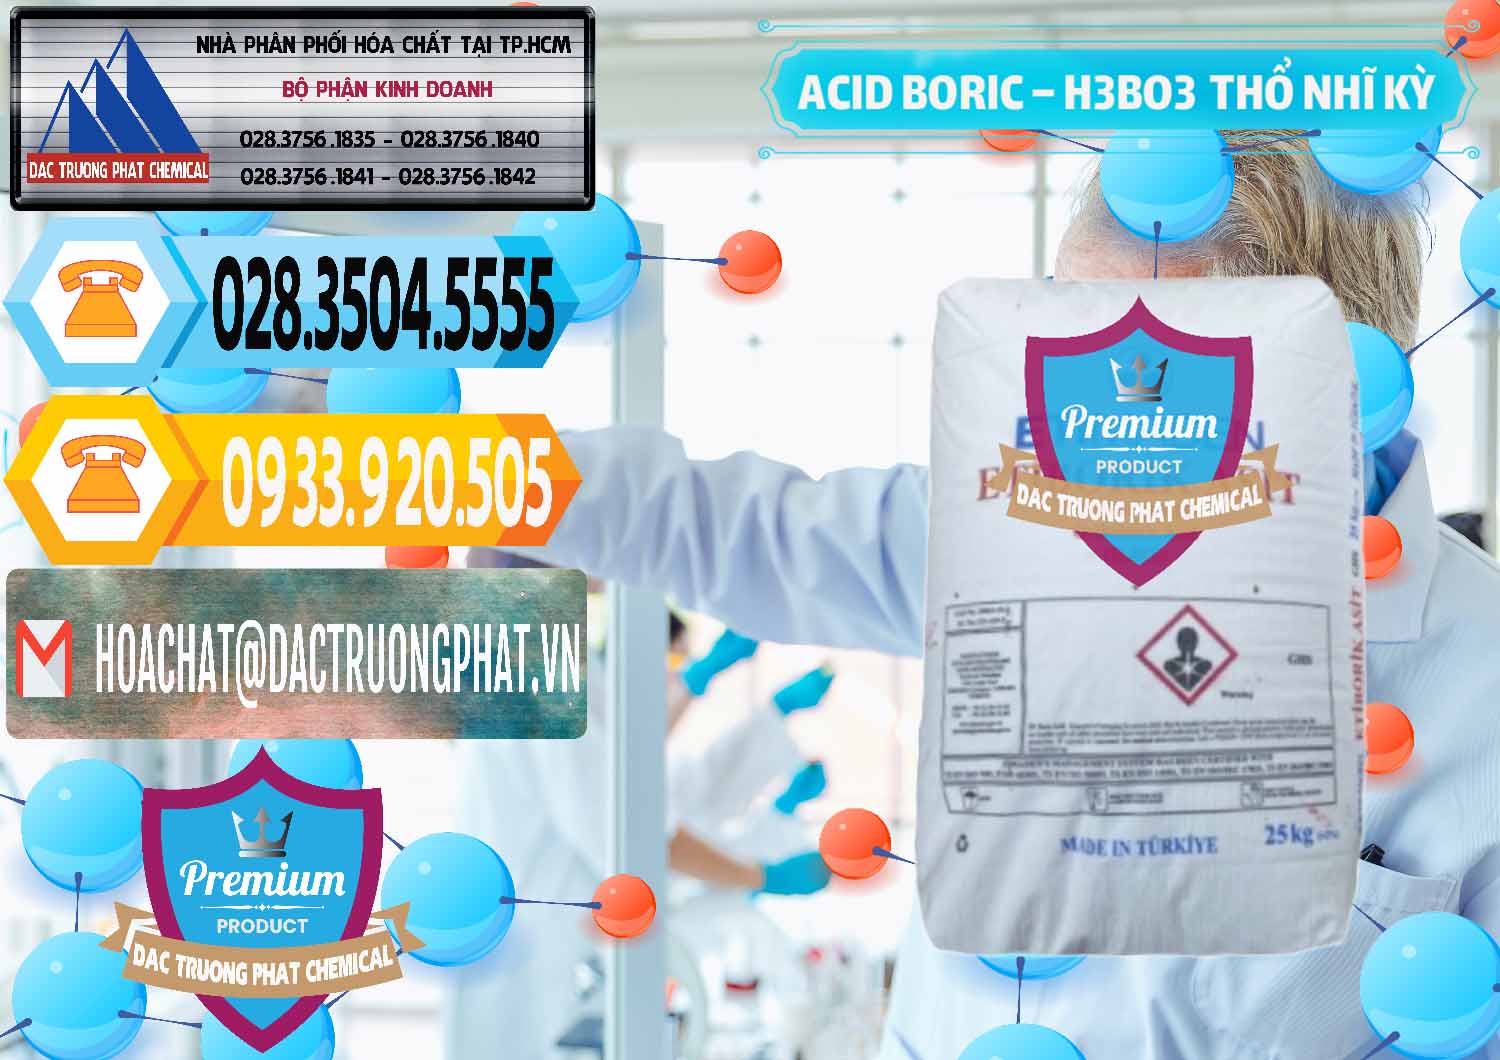 Nhà cung cấp & bán Acid Boric – Axit Boric H3BO3 Etimaden Thổ Nhĩ Kỳ Turkey - 0369 - Cty kinh doanh _ cung cấp hóa chất tại TP.HCM - hoachattayrua.net